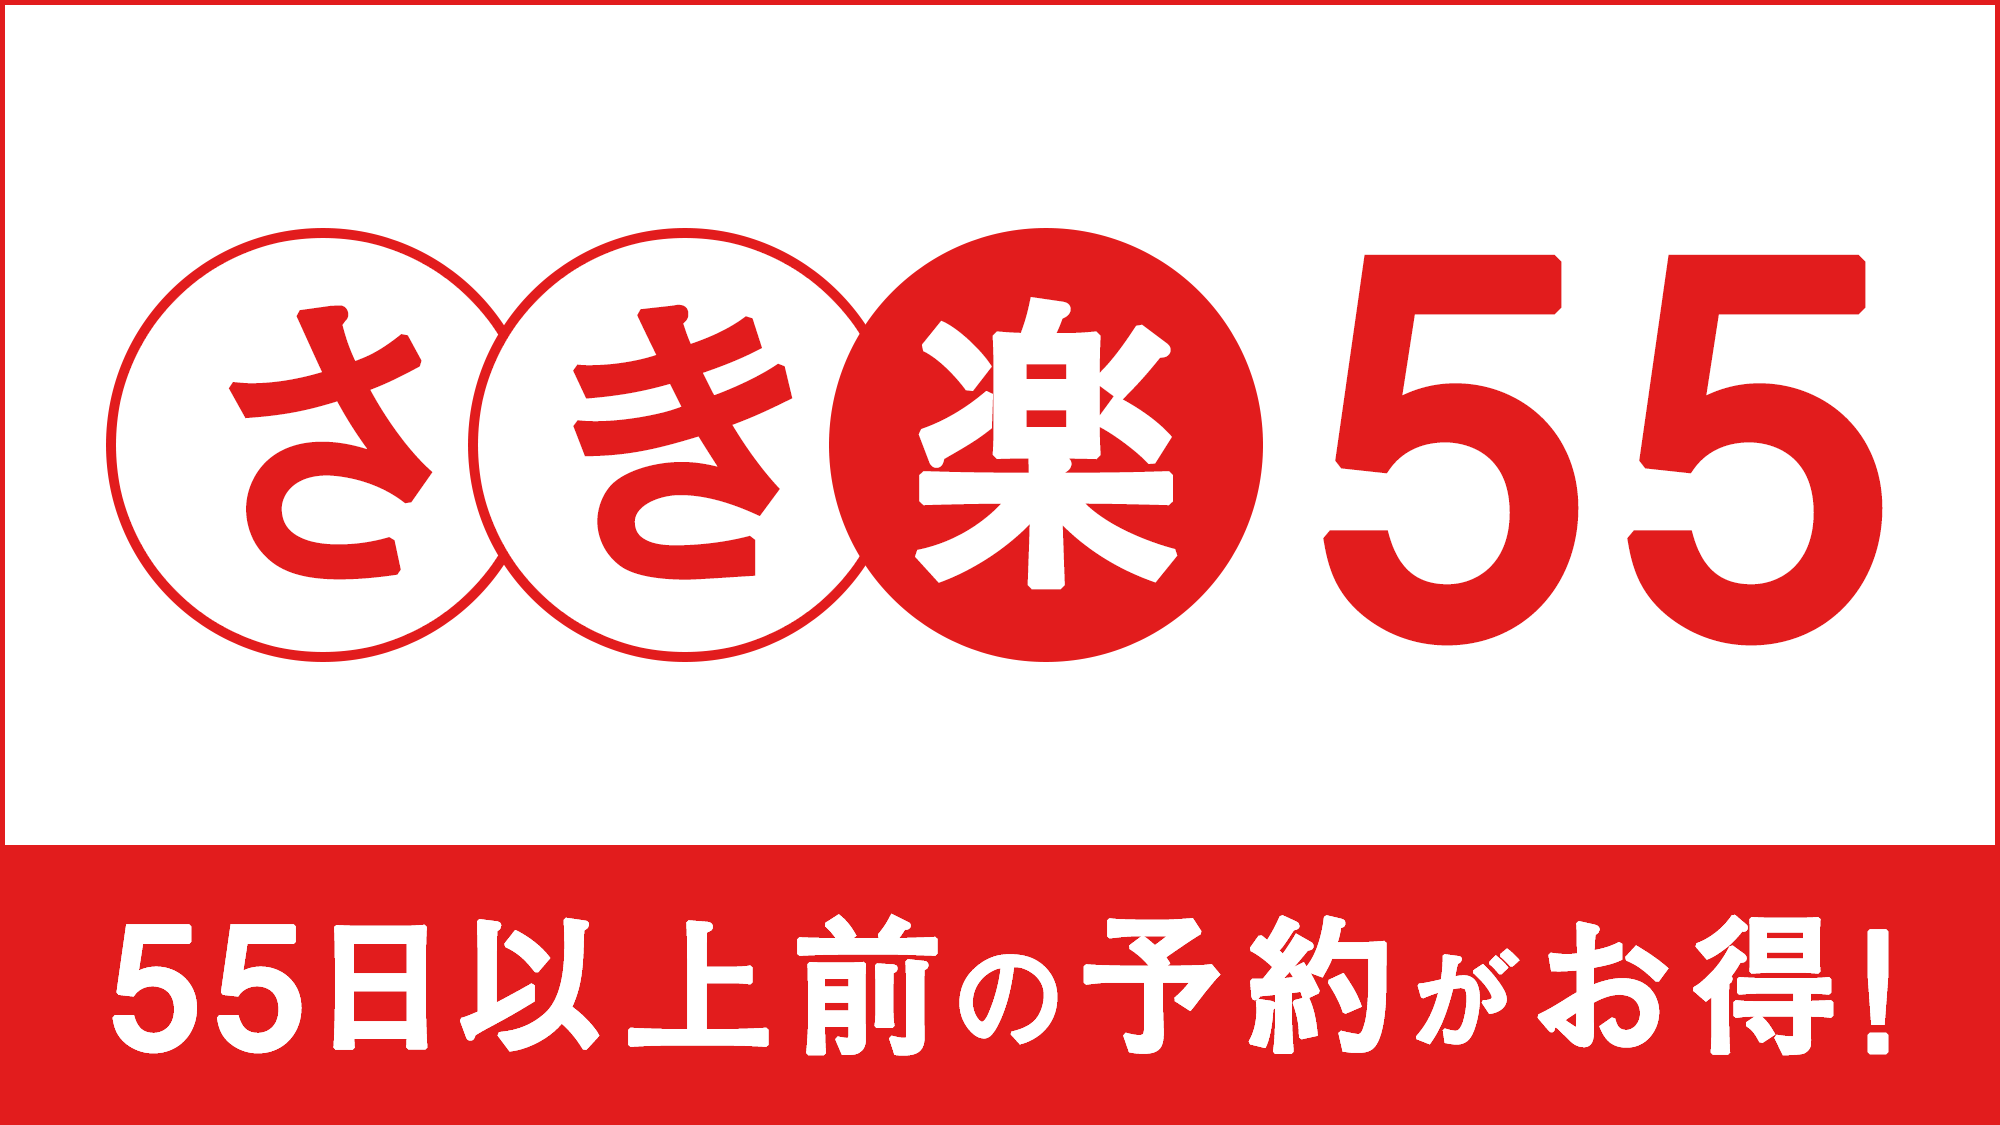 【さき楽55】 楽天スーパーポイント2倍保証☆ADVANCE55days☆